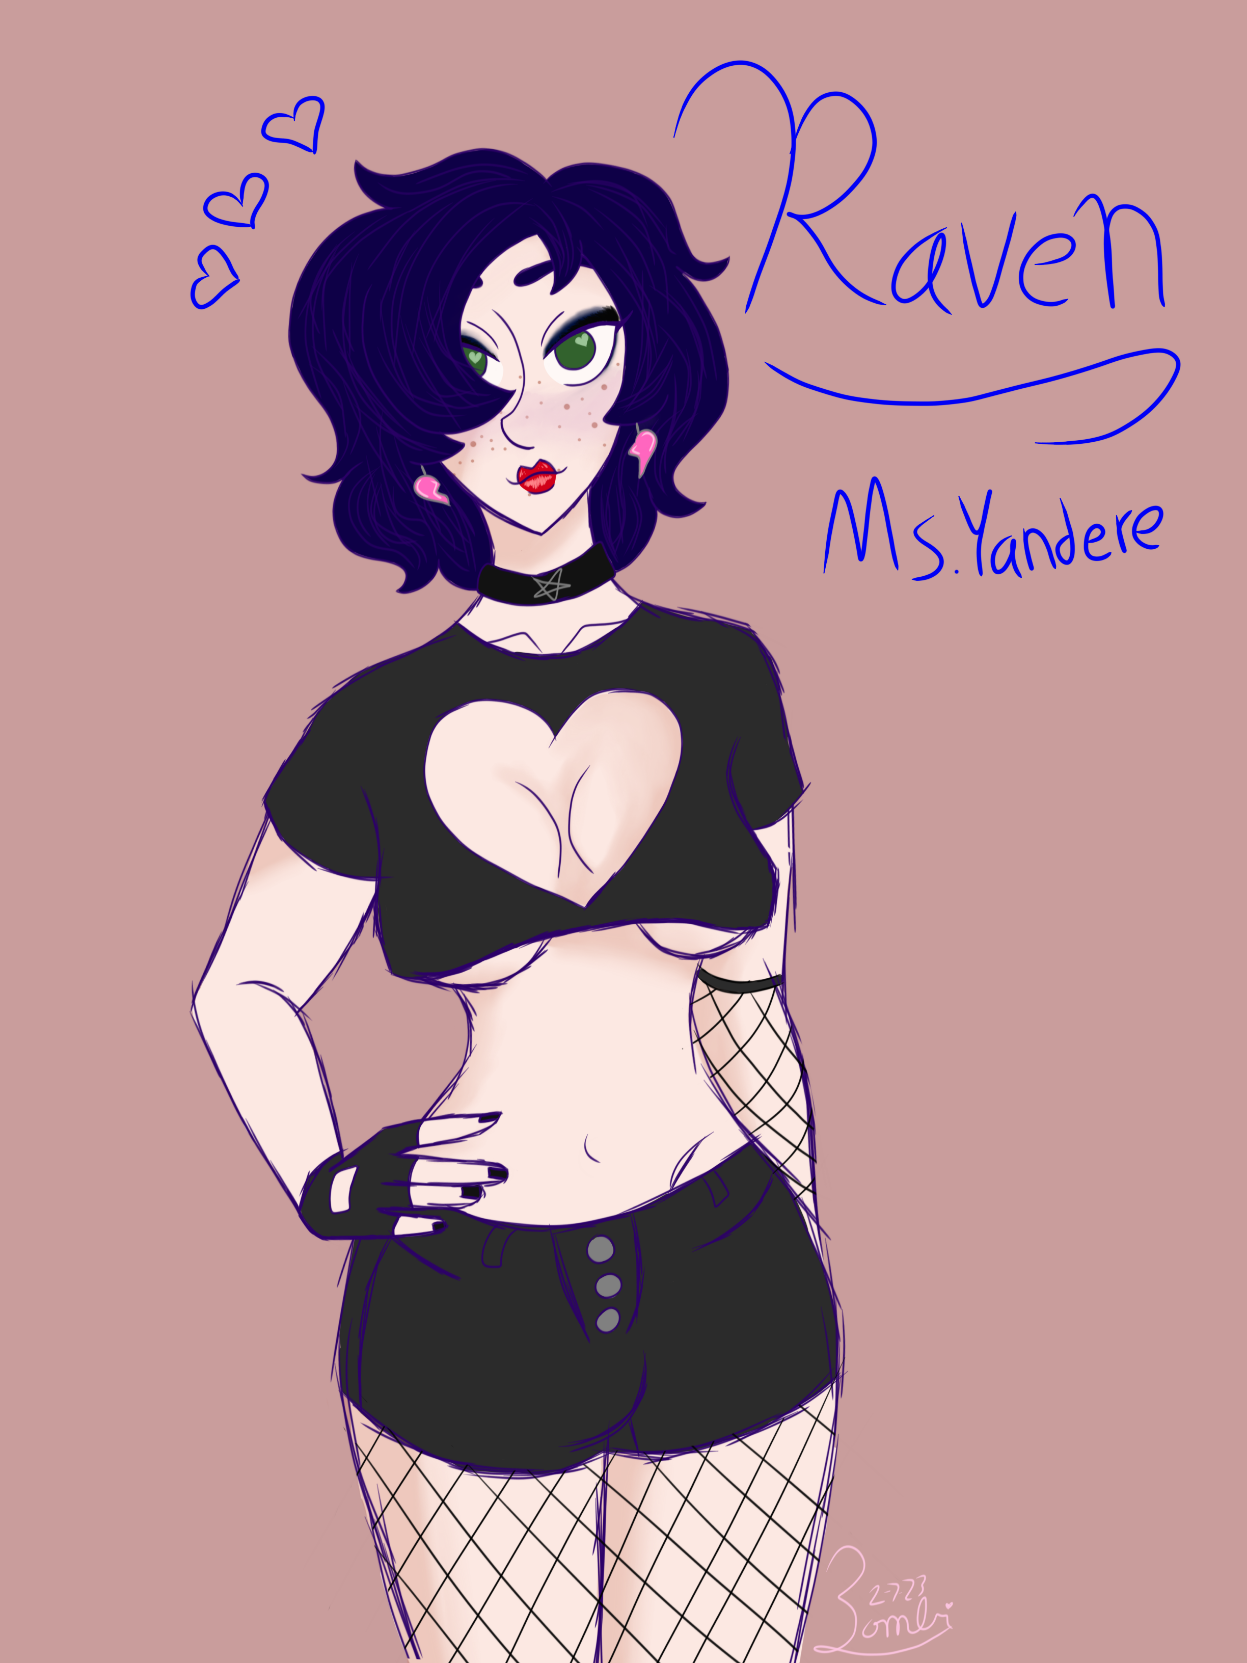 A picture of Raven, Freak4Freak's Yandere love interest.